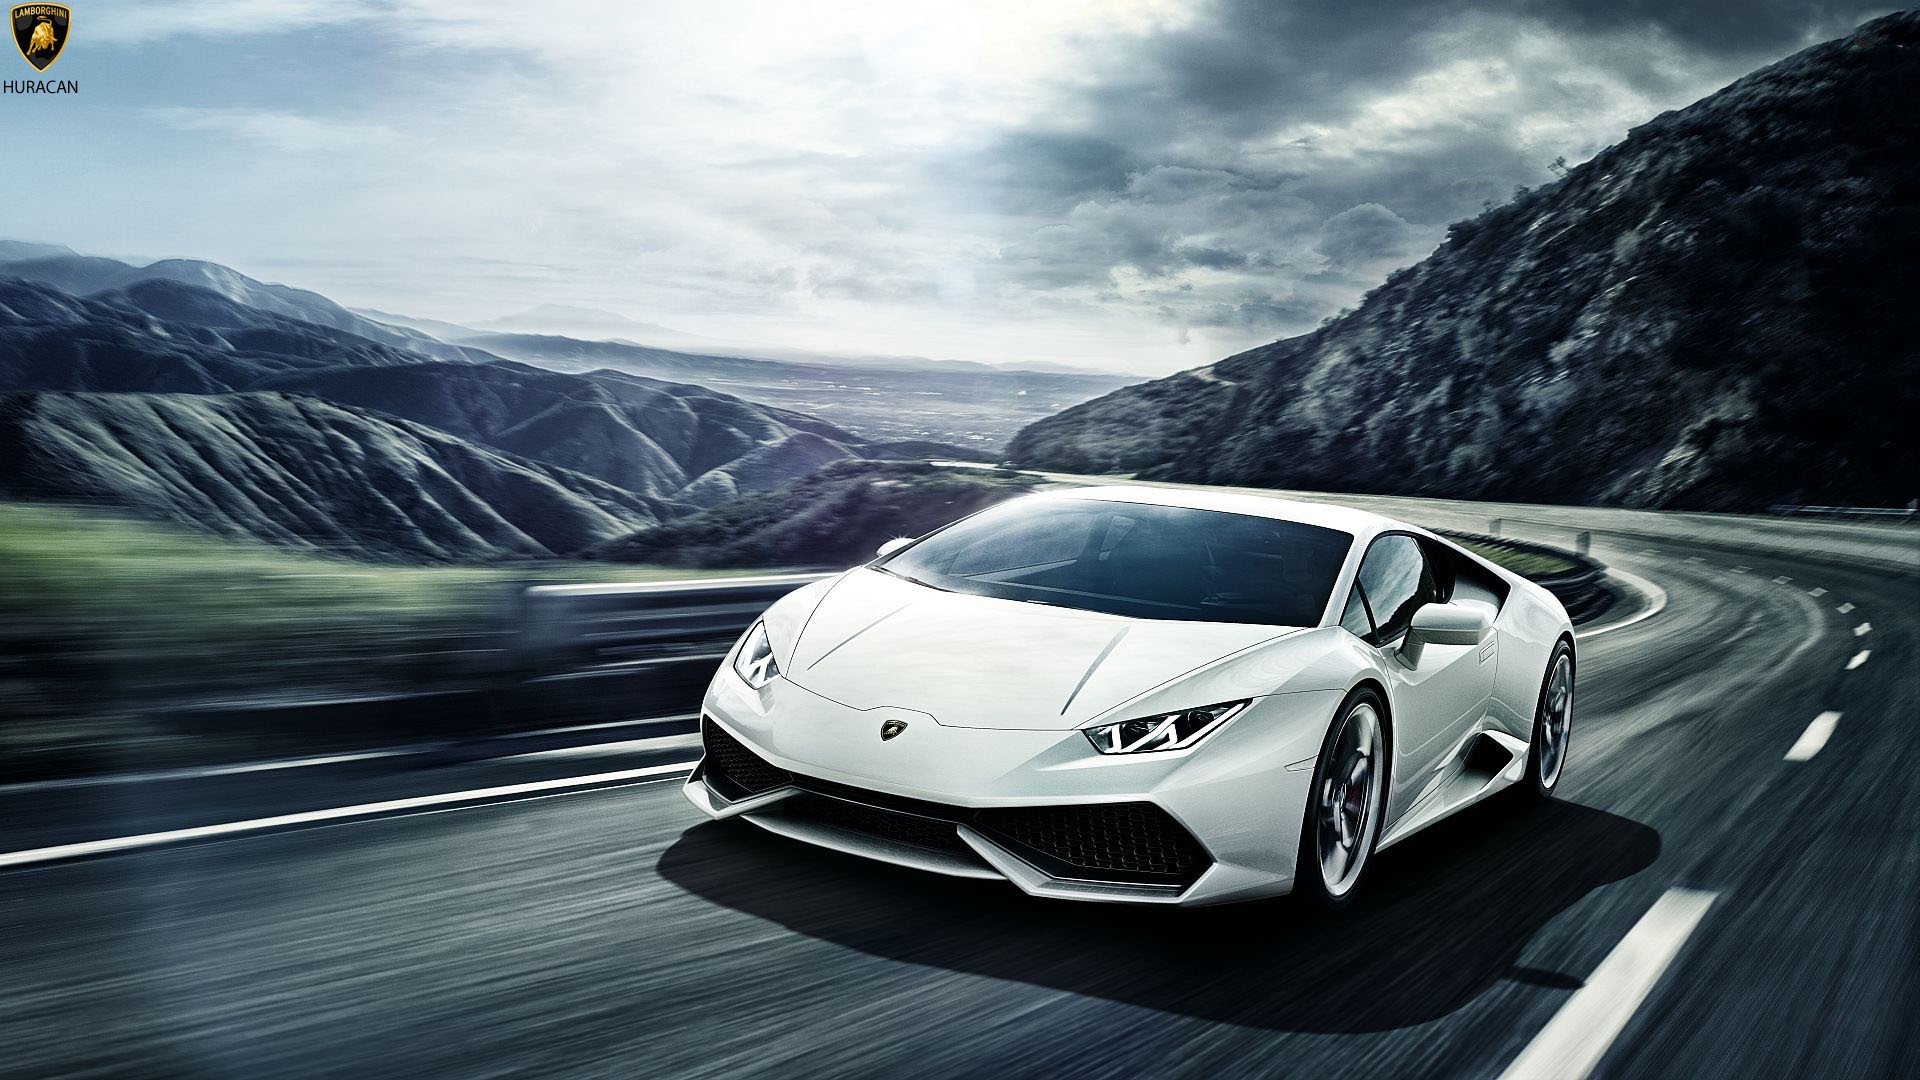 Lamborghini Huracan wallpaper ·① ① Download free cool full ...